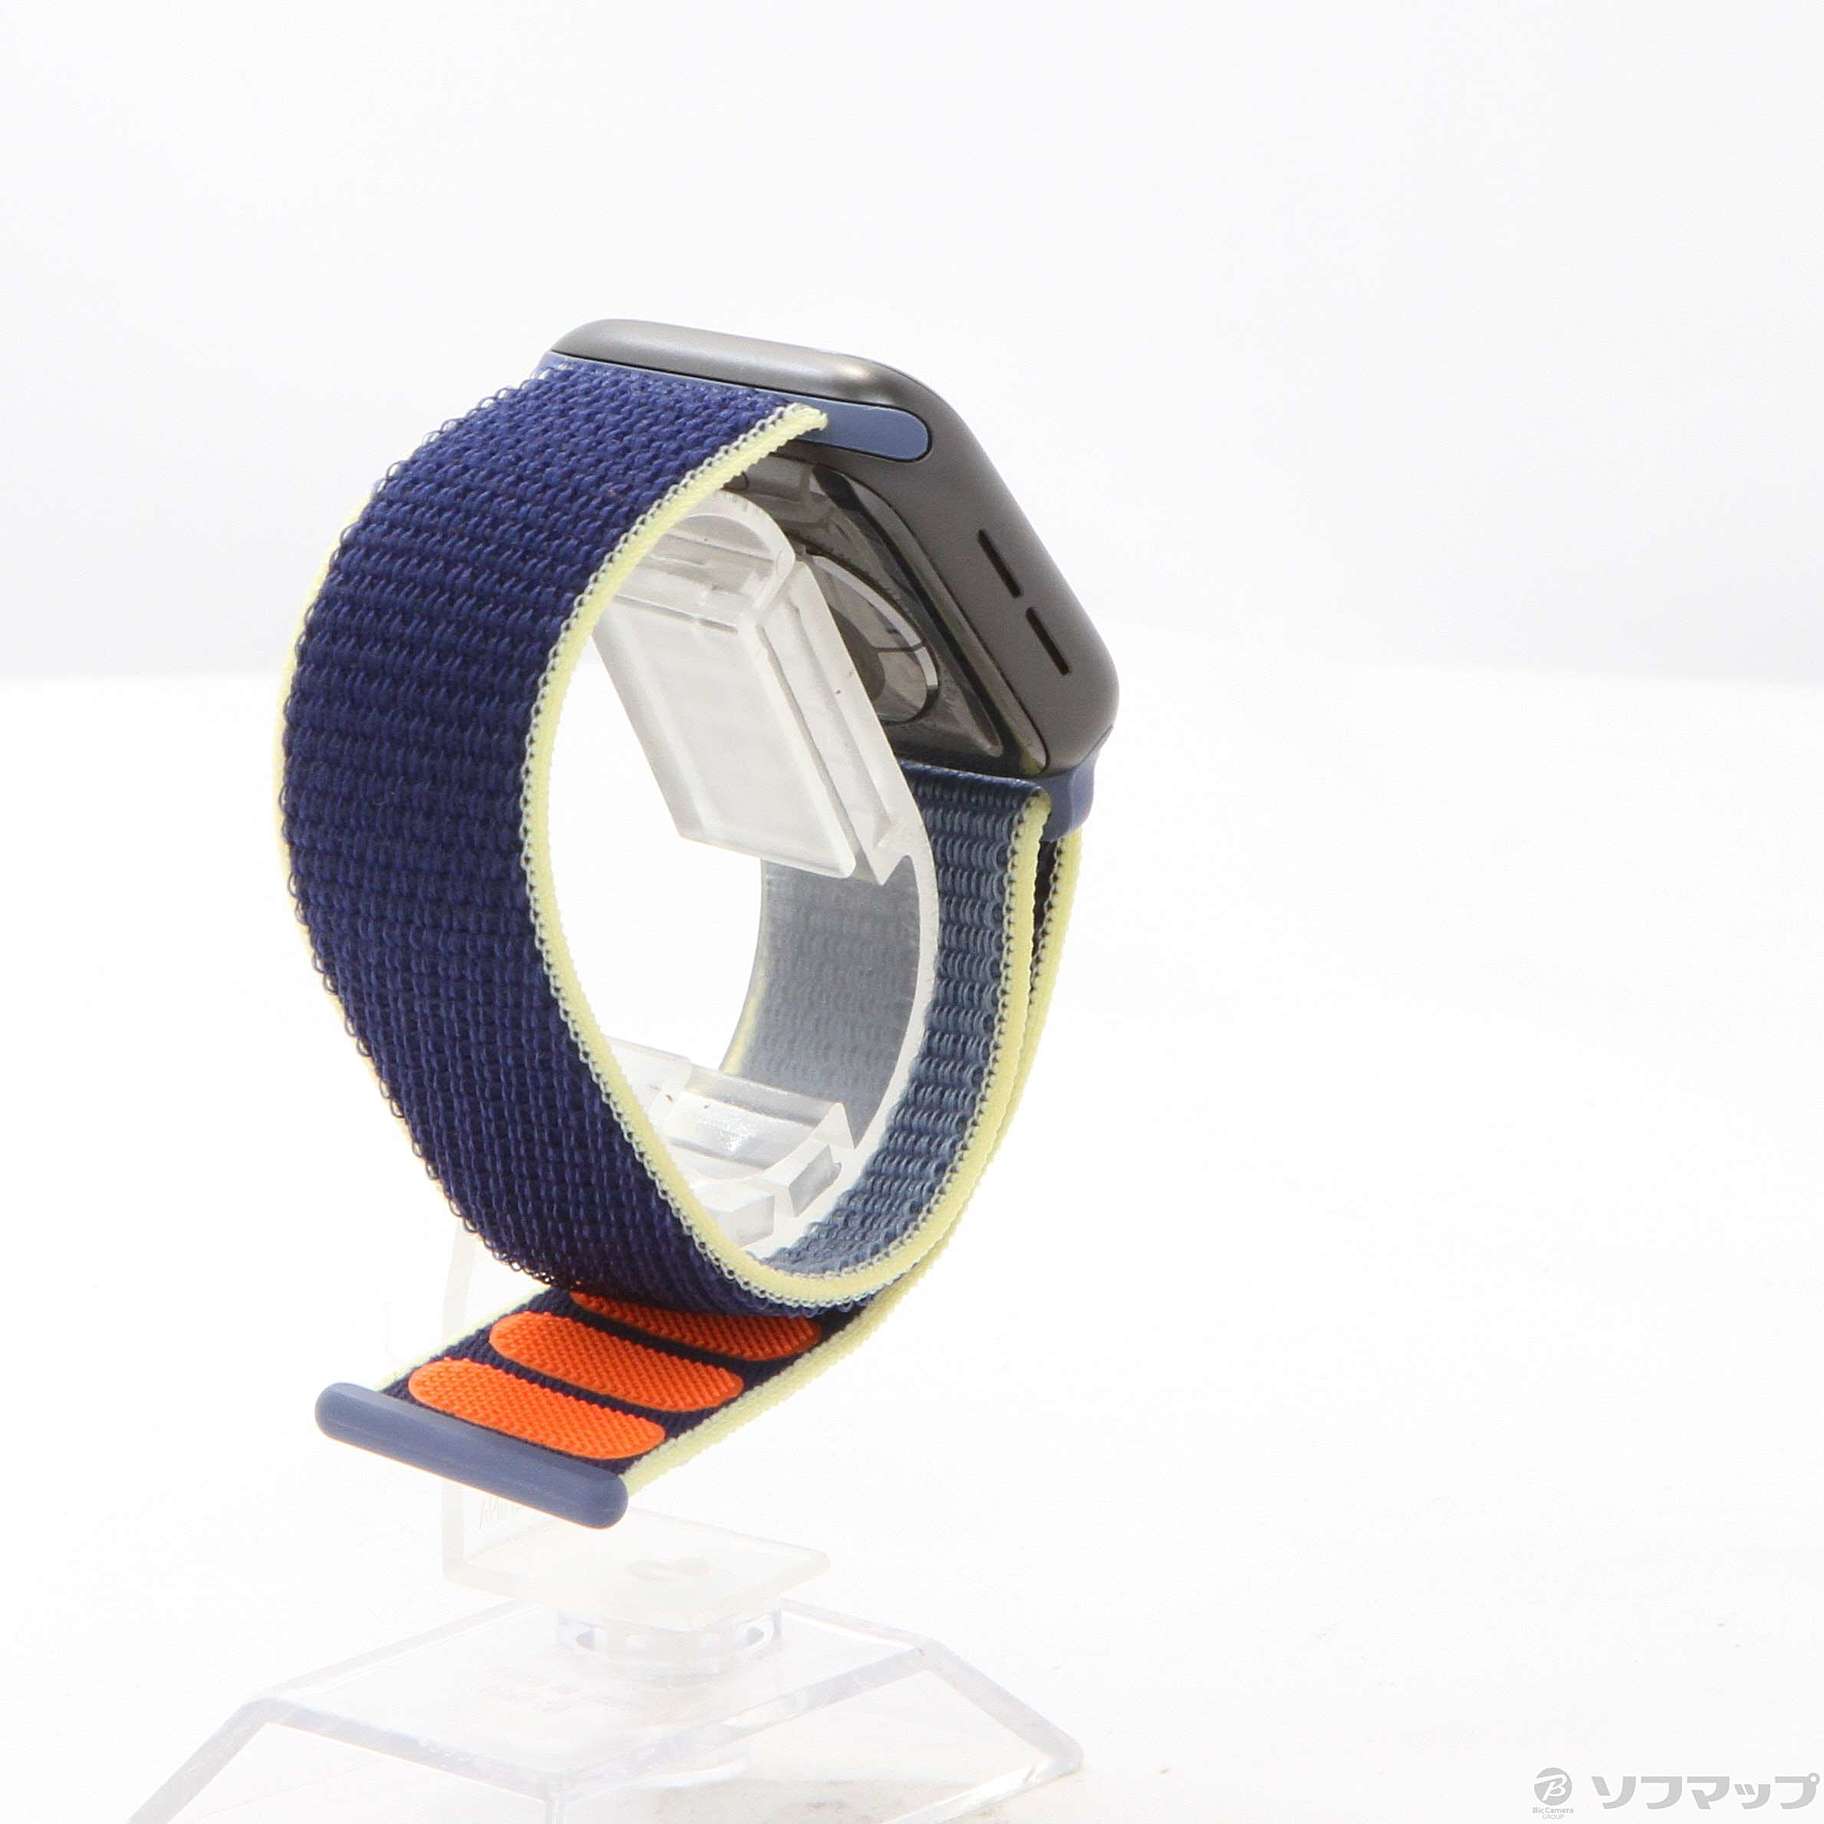 Apple Watch Series 5 GPS 40mm スペースグレイアルミニウムケース アラスカンブルースポーツループ